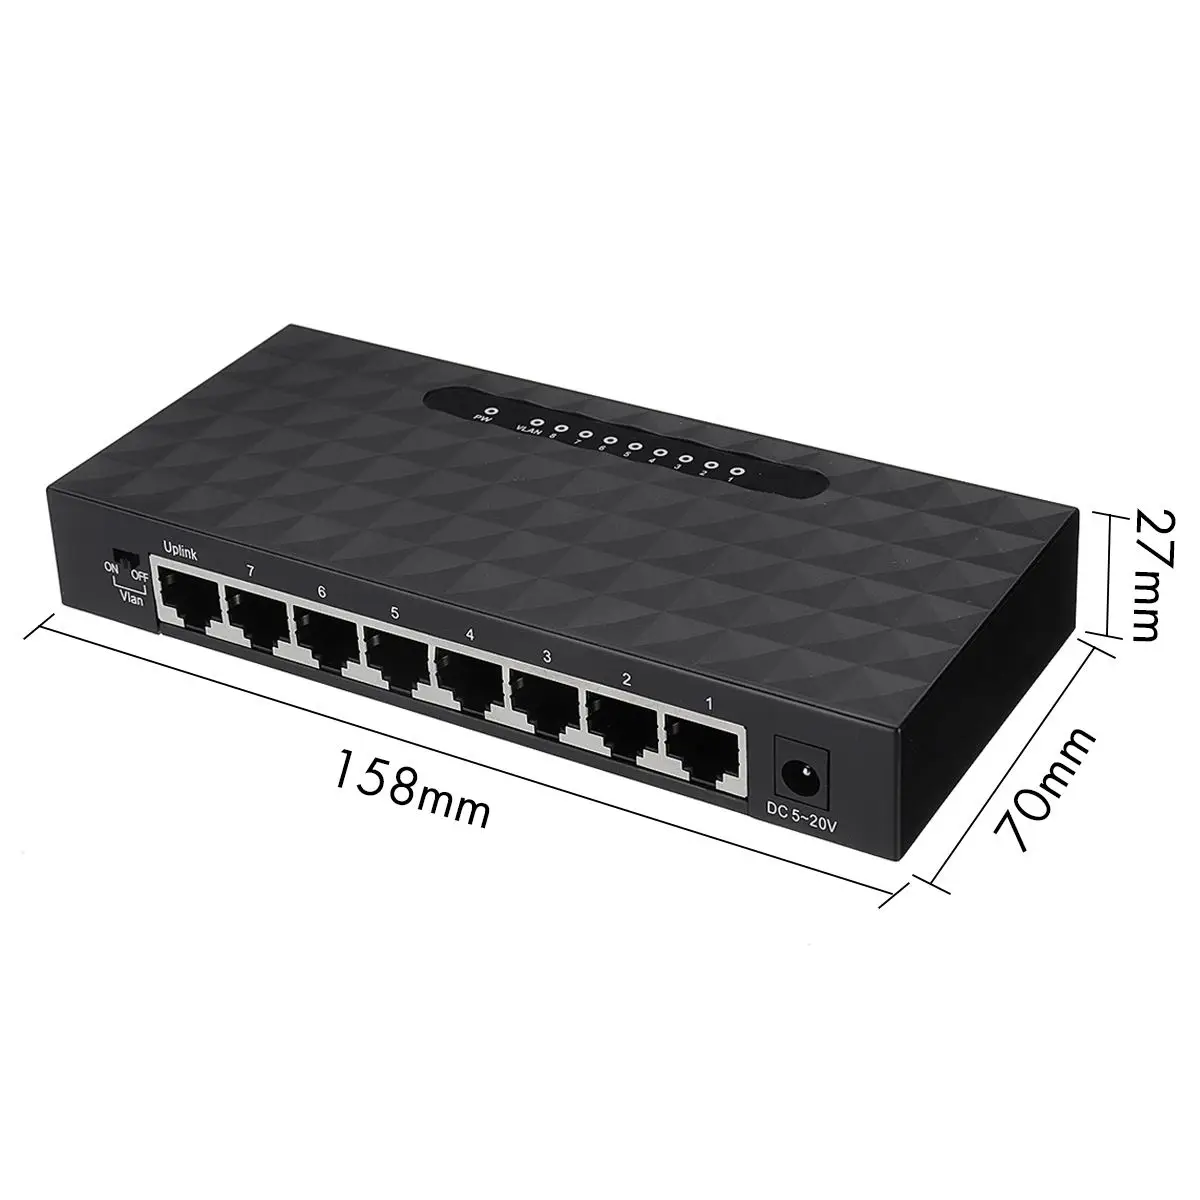 1Pcs 5V 5-Ports 8-Ports RJ-45 10/100Mbps Gigabit Ethernet Network Switch Internet Hub for TV Computer Games